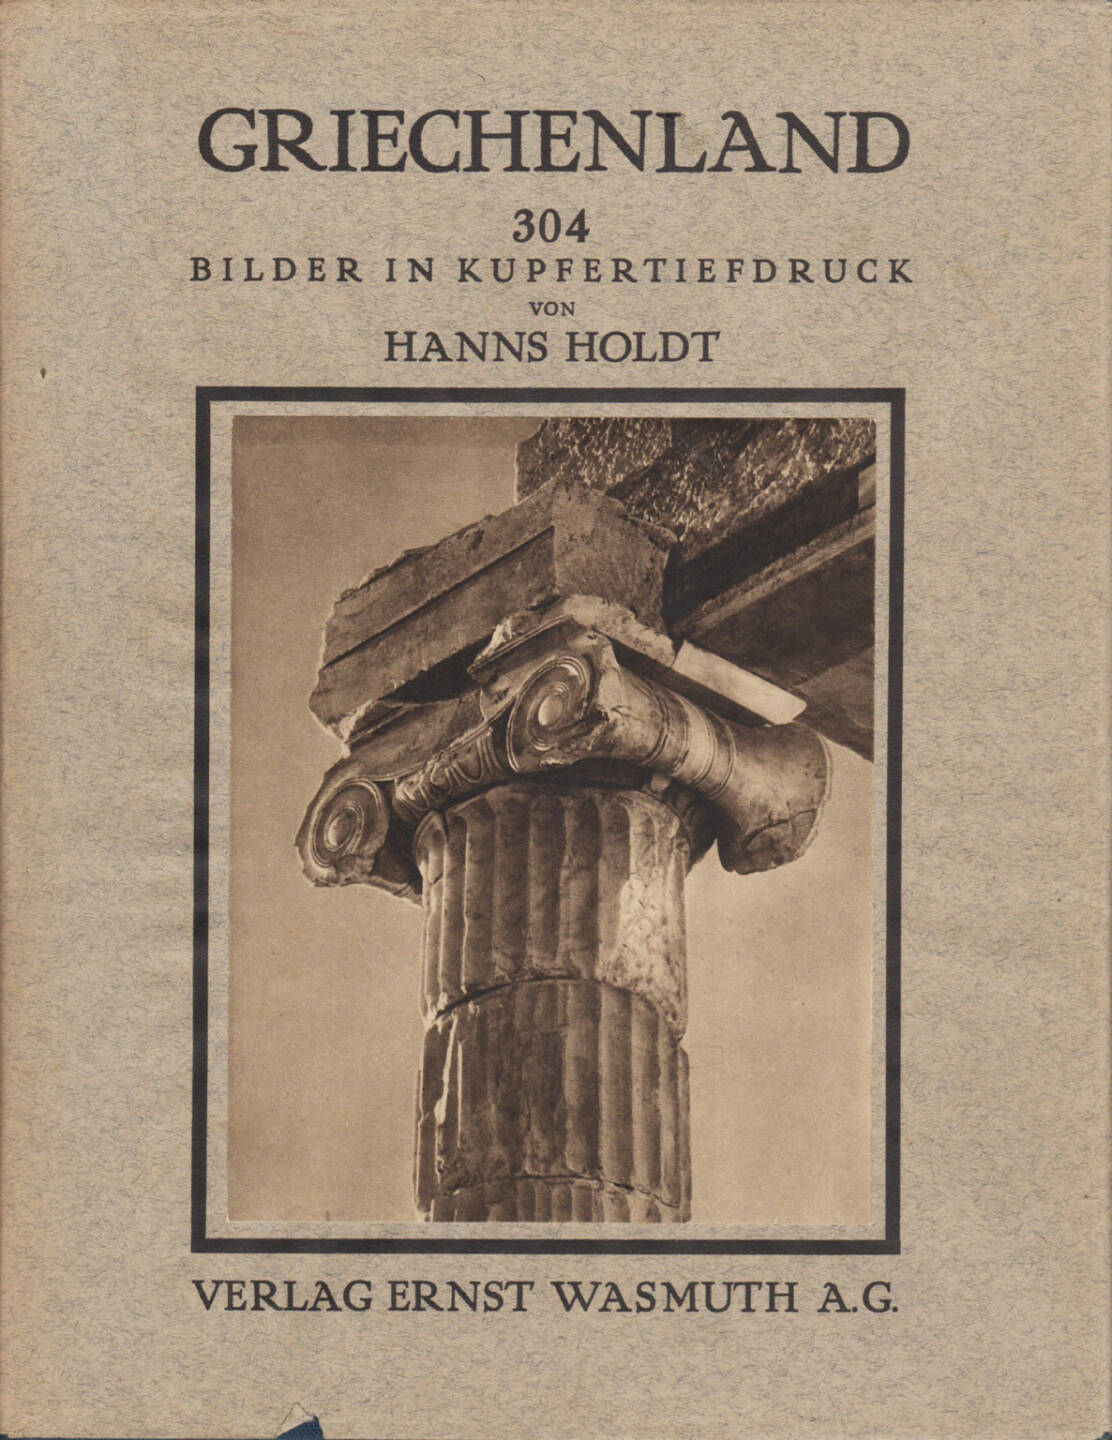 Hanns Holdt - Griechenland. Baukunst, Landschaft und Volksleben, Ernst Wasmuth A.G. 1928, Cover - http://josefchladek.com/book/hanns_holdt_-_griechenland_baukunst_landschaft_und_volksleben